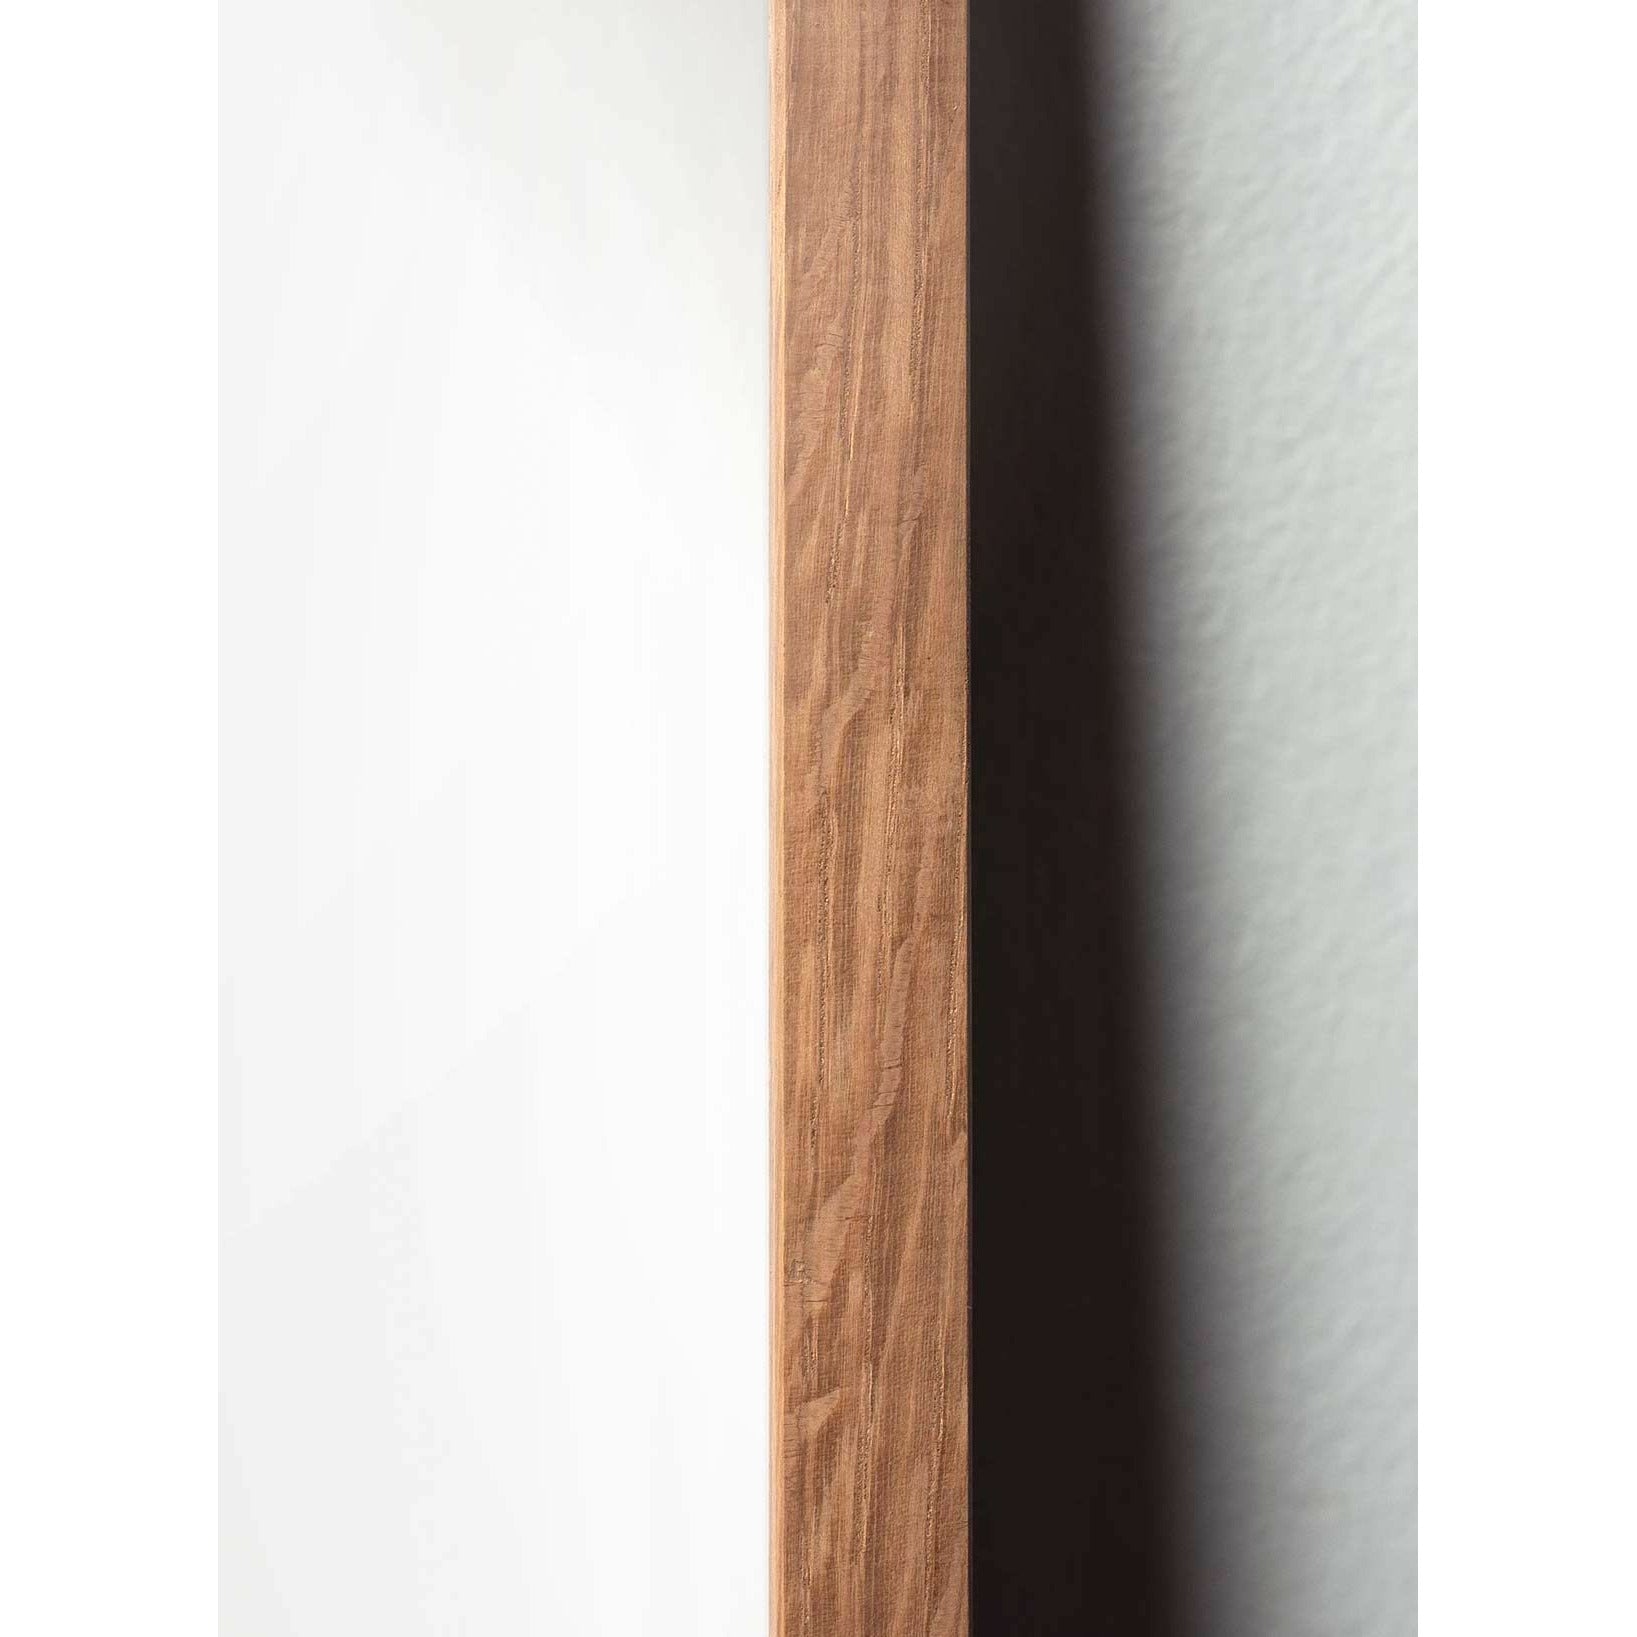 Poster classico di cono di pino da un'idea, cornice in legno chiaro A5, sfondo bianco